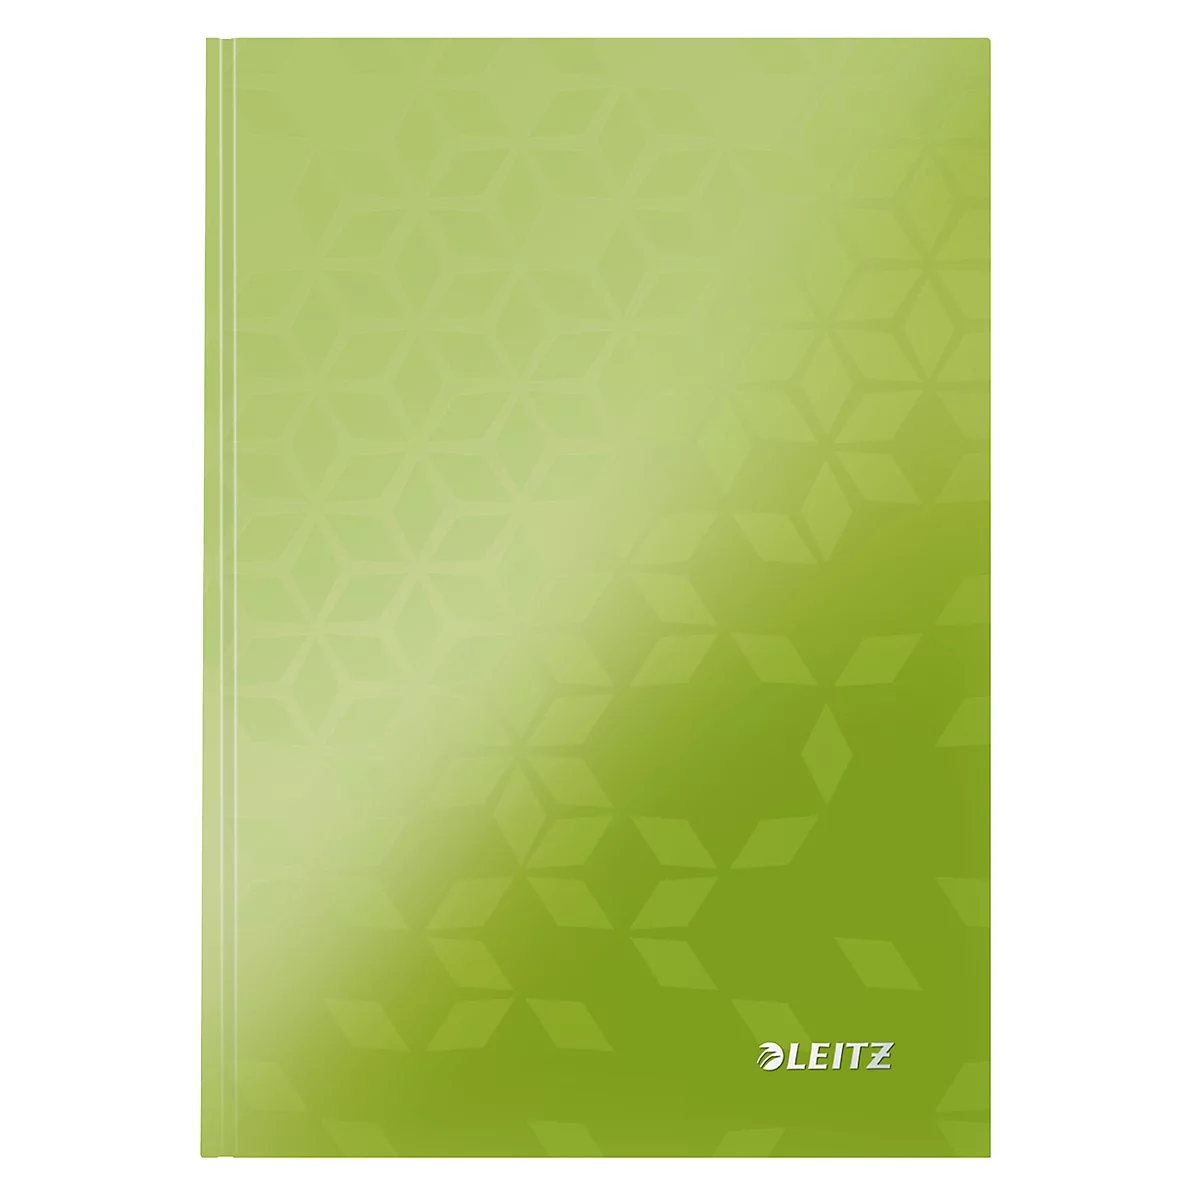 LEITZ Notizbuch WOW 4628, DIN A5, kariert, grün